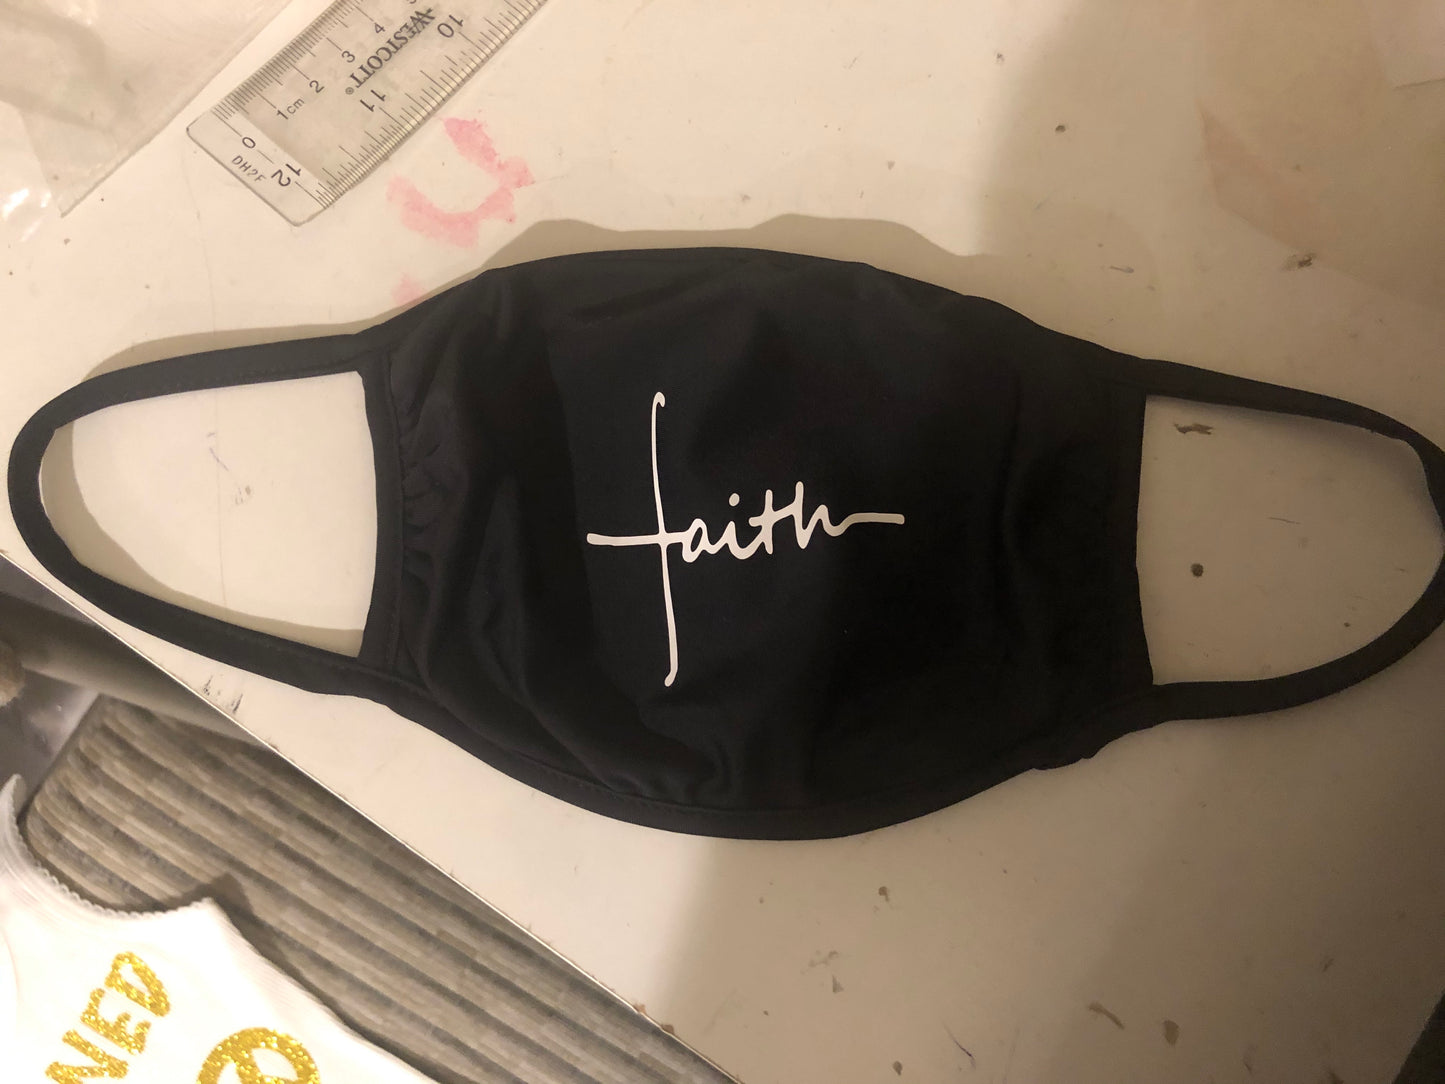 Faith mask 😷 washable